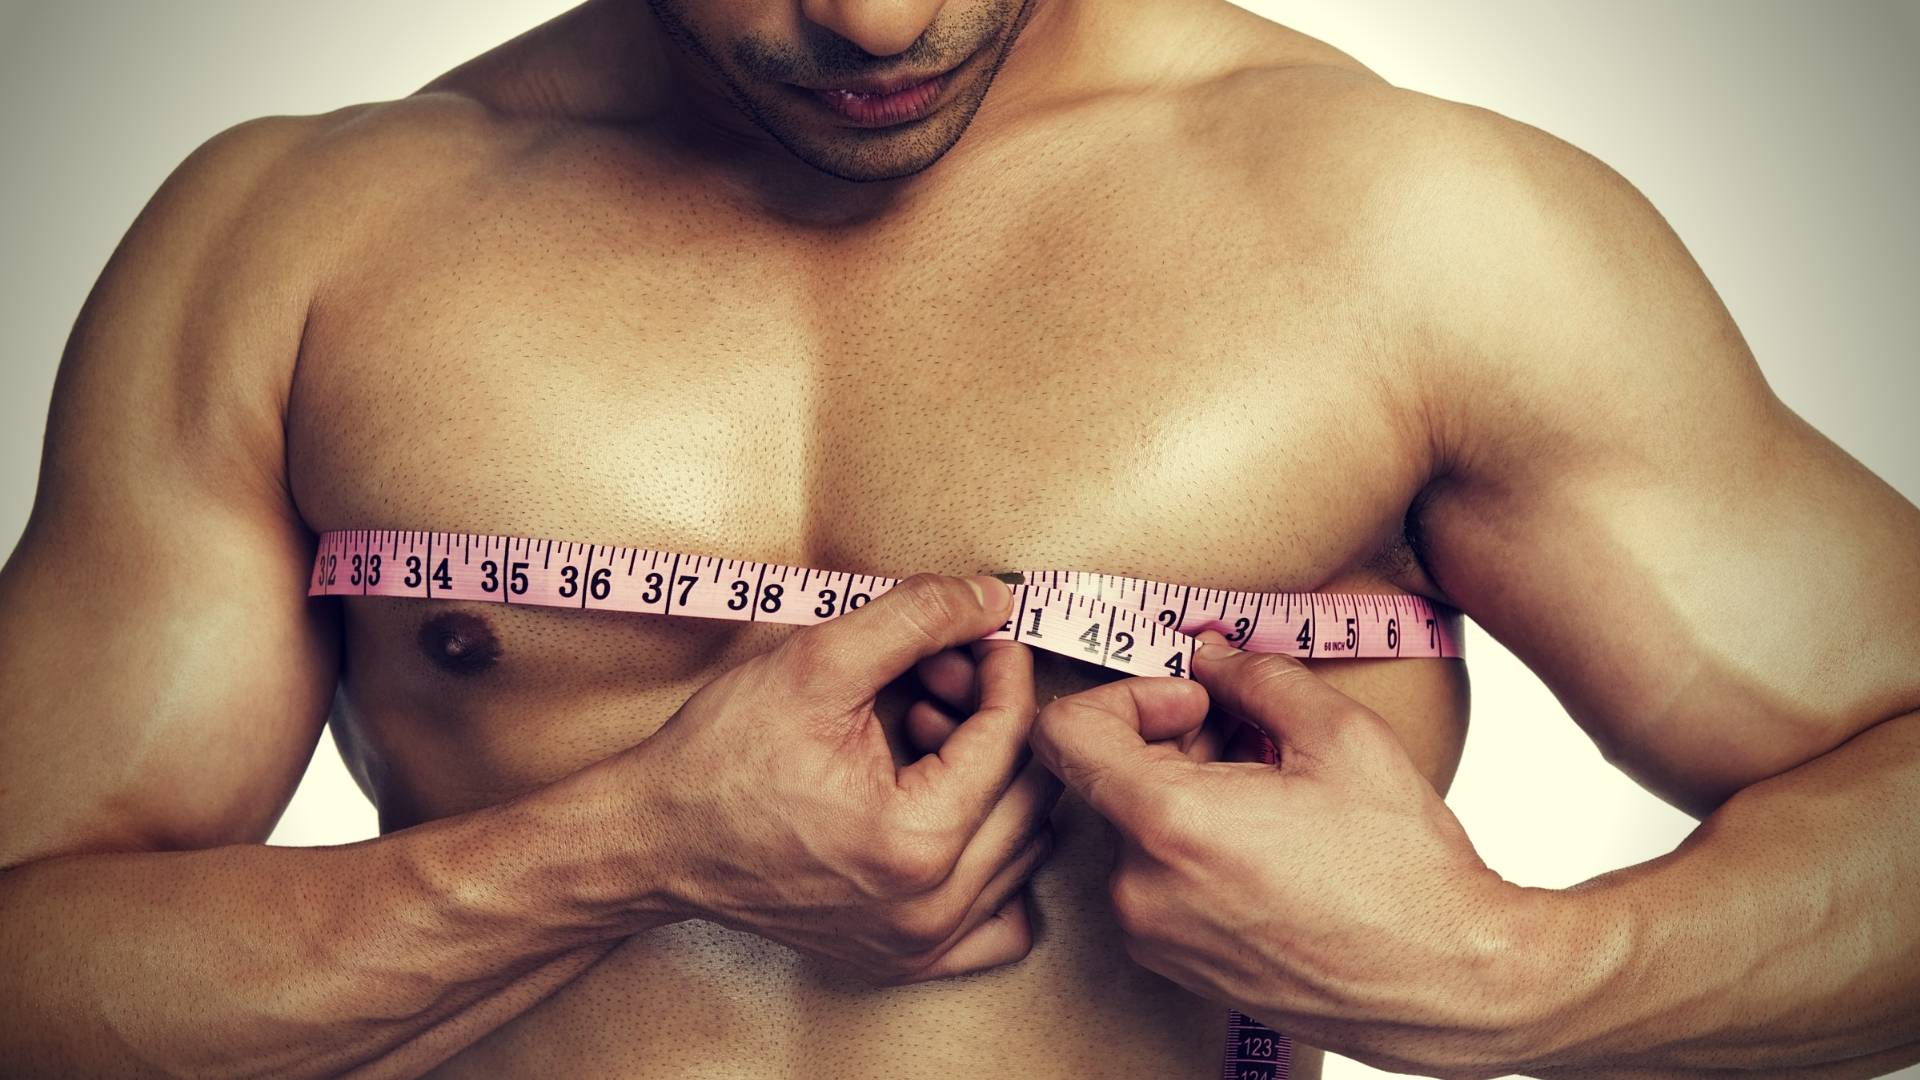 У мужчины 5 см. Обхват груди у мужчин. Объем груди у мужчин. Измерение груди. Обхват мужской грудной клетки.